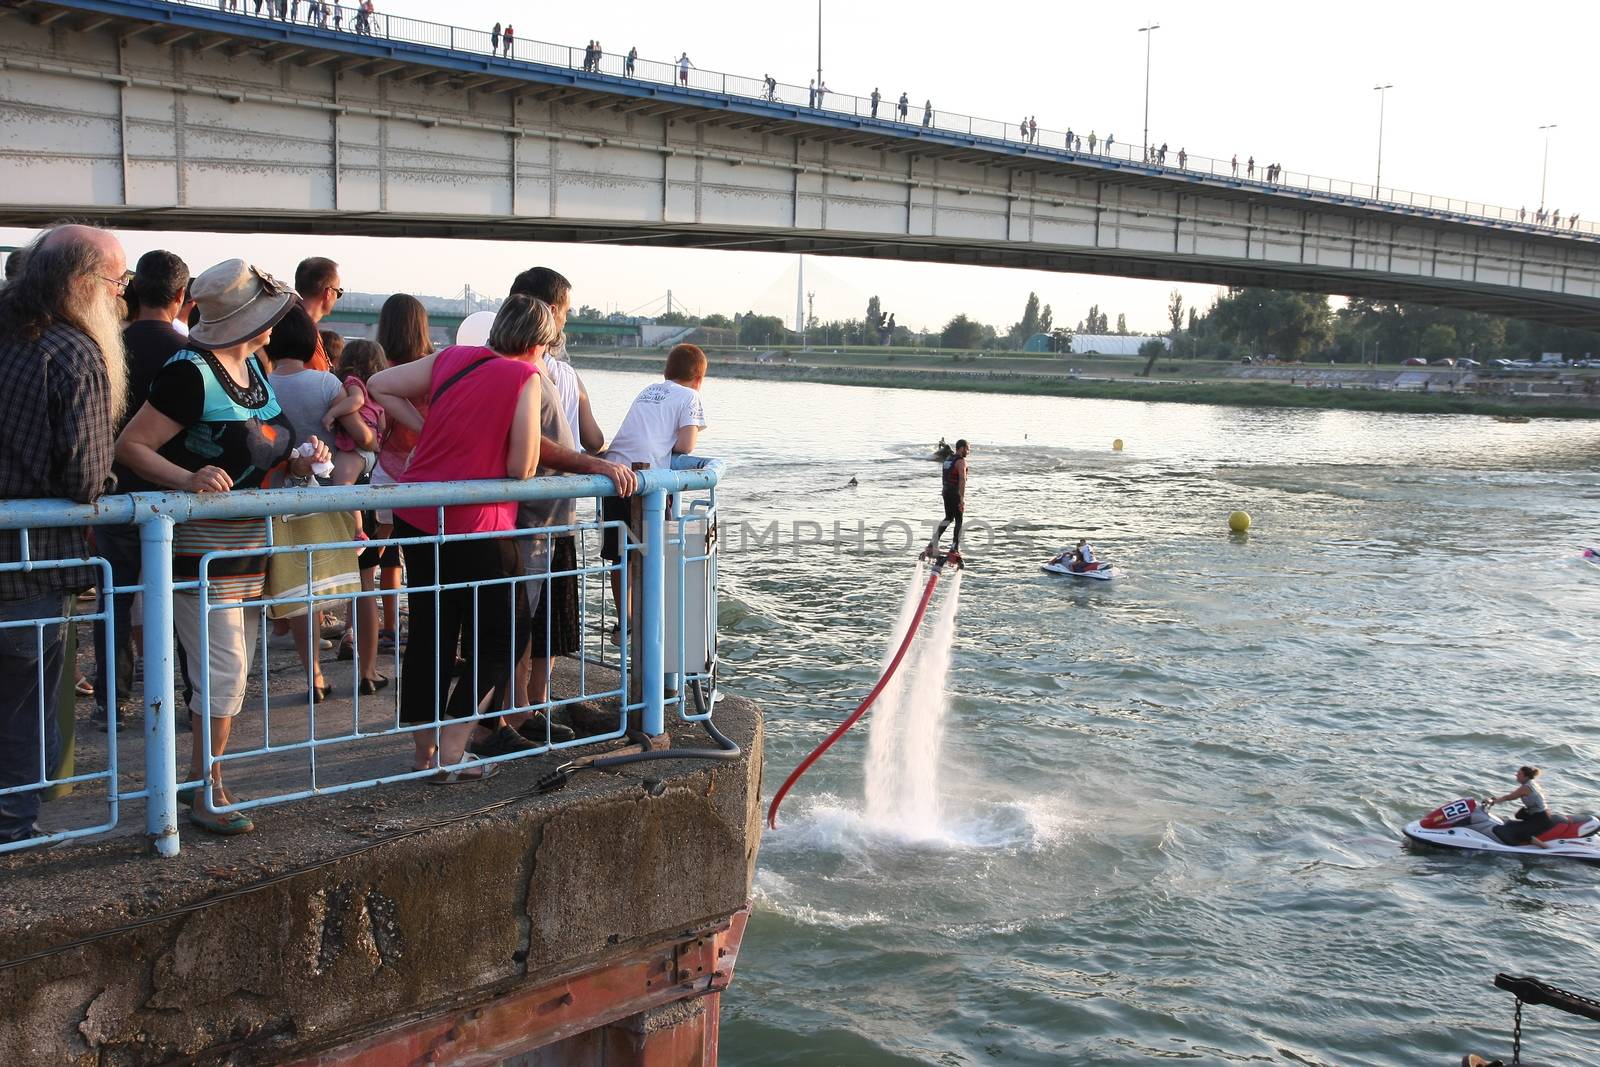 Exhibitions at Belgrade Boat Carnival held on Avgust 29 2015 at Belgrade,Serbia